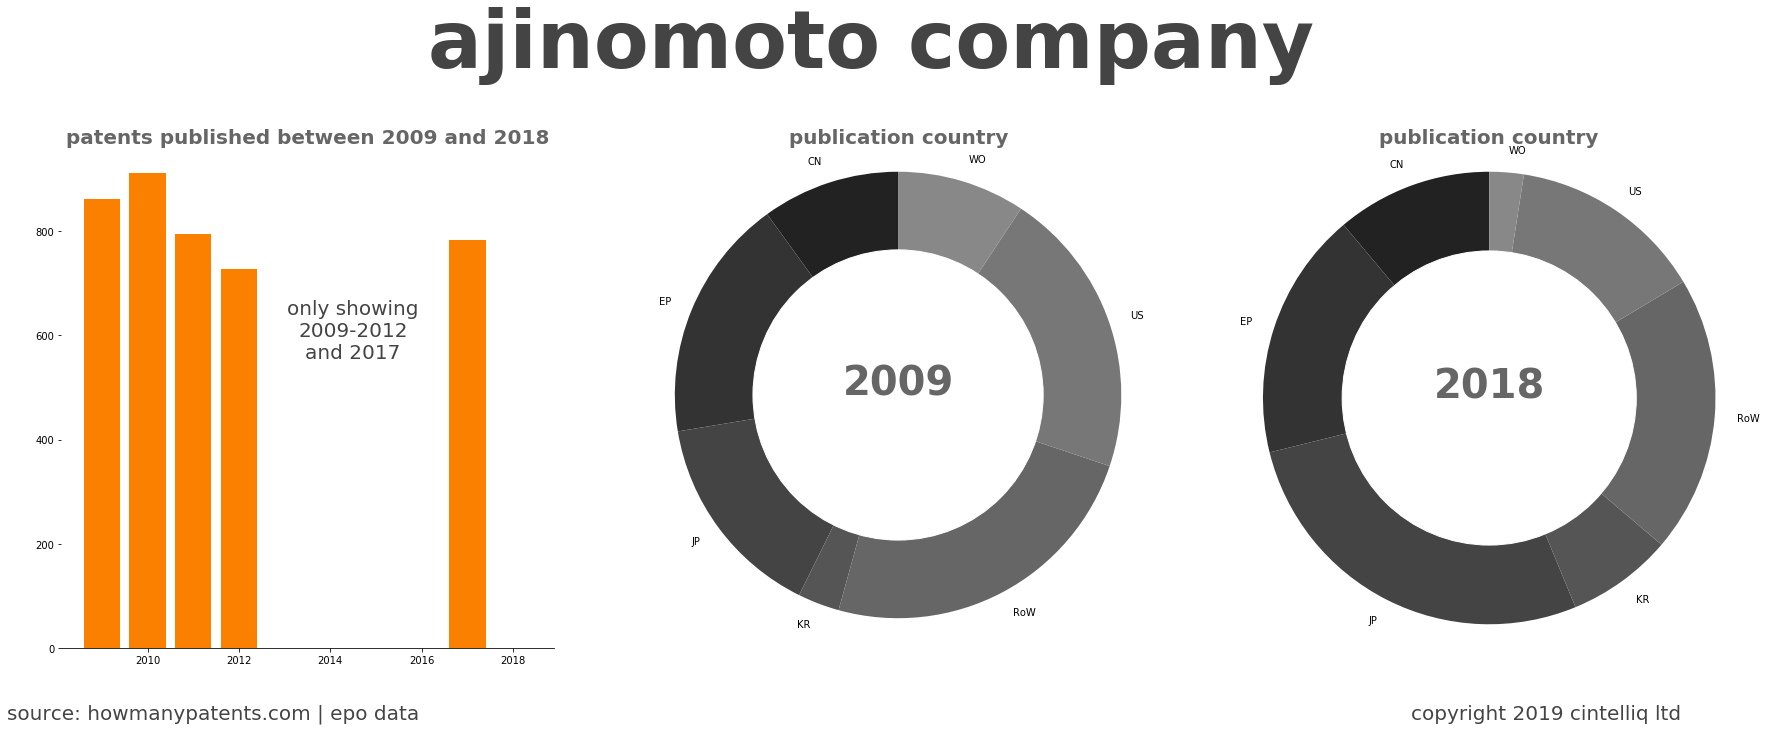 summary of patents for Ajinomoto Company